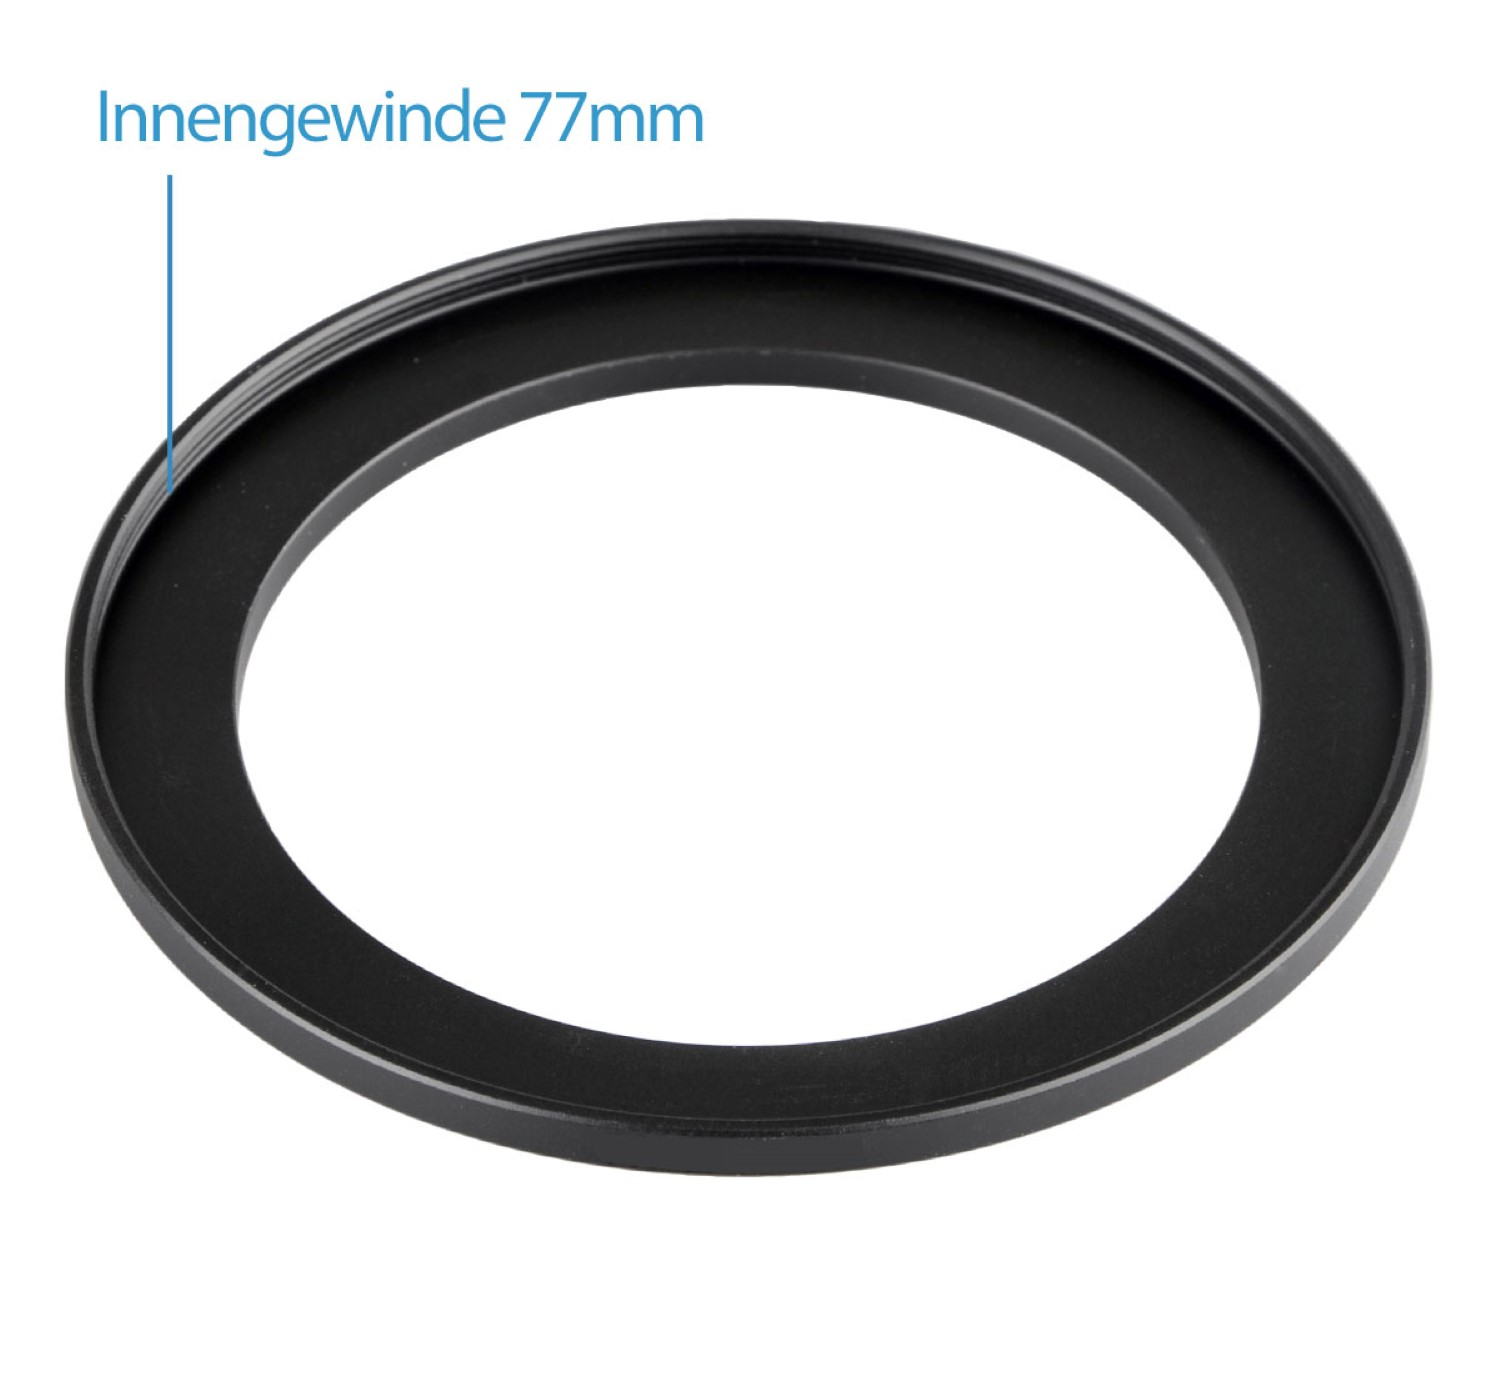 mit Adapter, Black, passend AYEX Step-Up Objektive Filtergewinde Ring, für